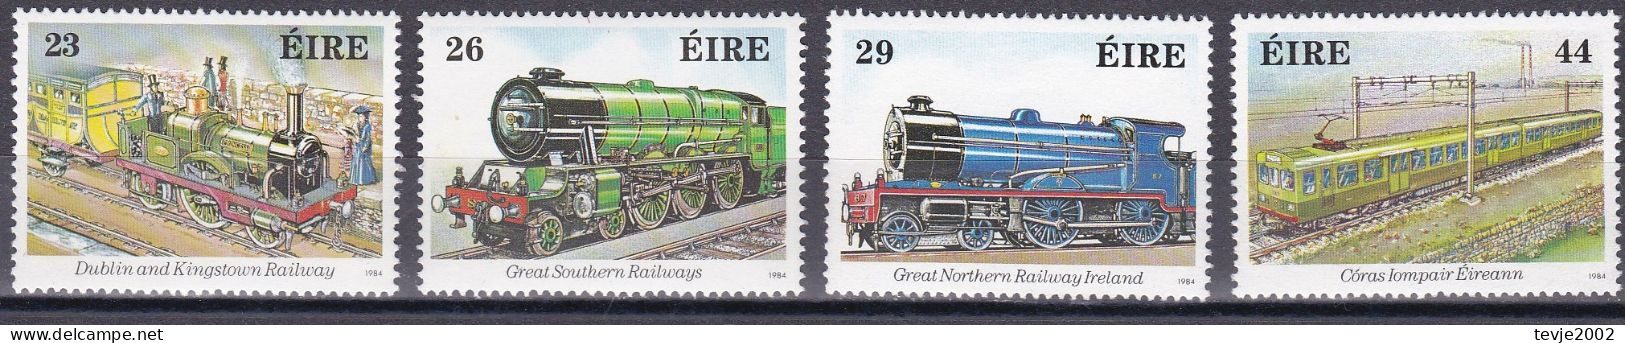 Irland Eire 1984 - Mi.Nr. 528 - 531 - Postfrisch MNH - Eisenbahnen Railways - Trains